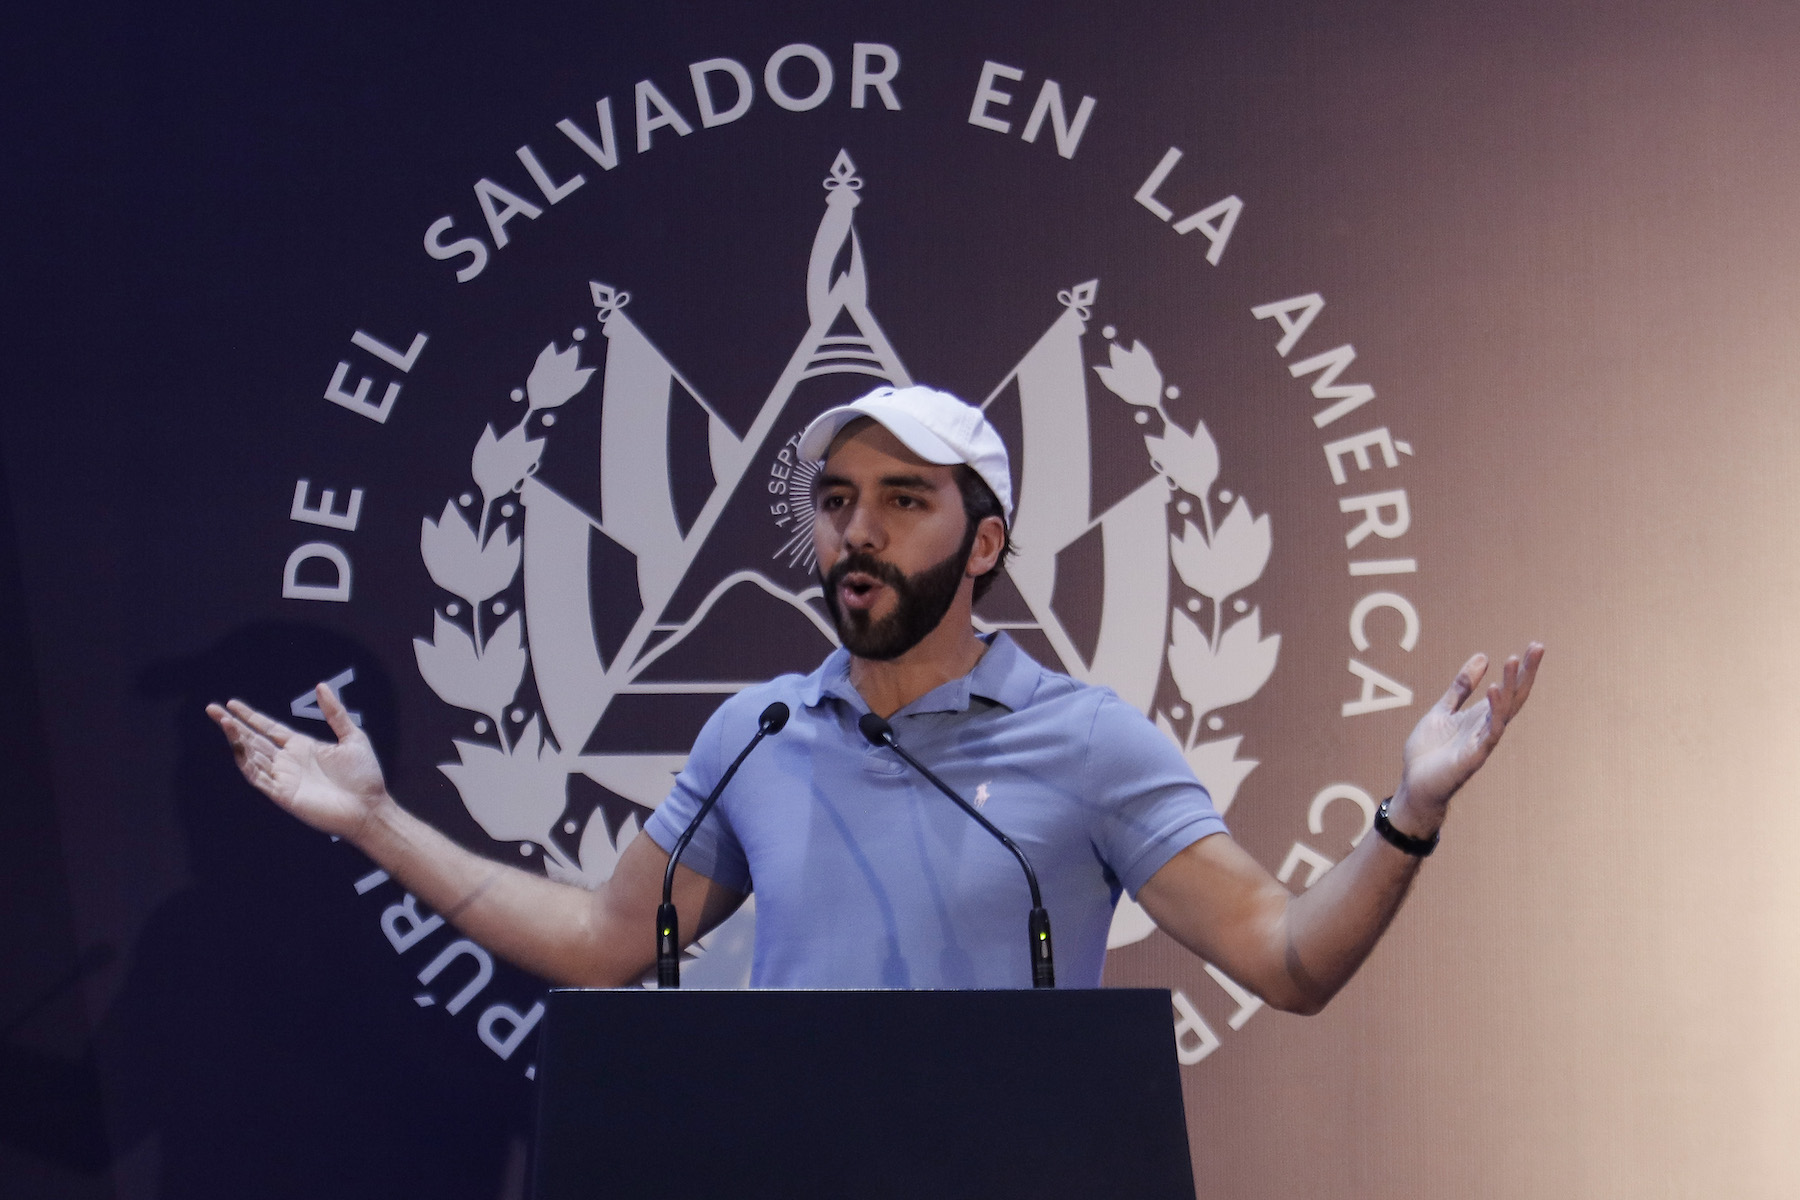 El Salvador Re-elected “The World’s Coolest Dictator”